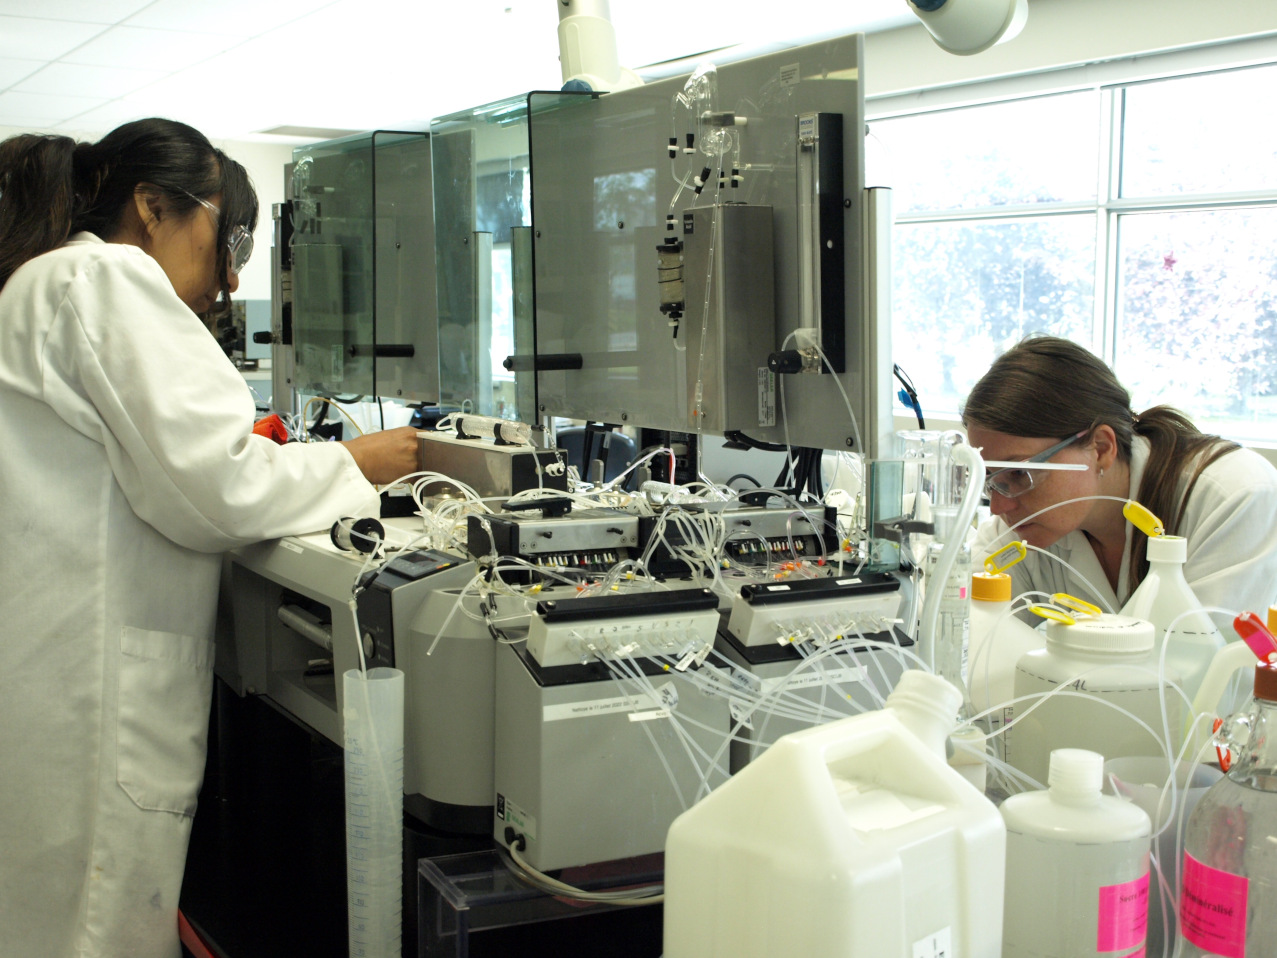 Deux techniciennes de laboratoire font de la maintenance sur un appareil